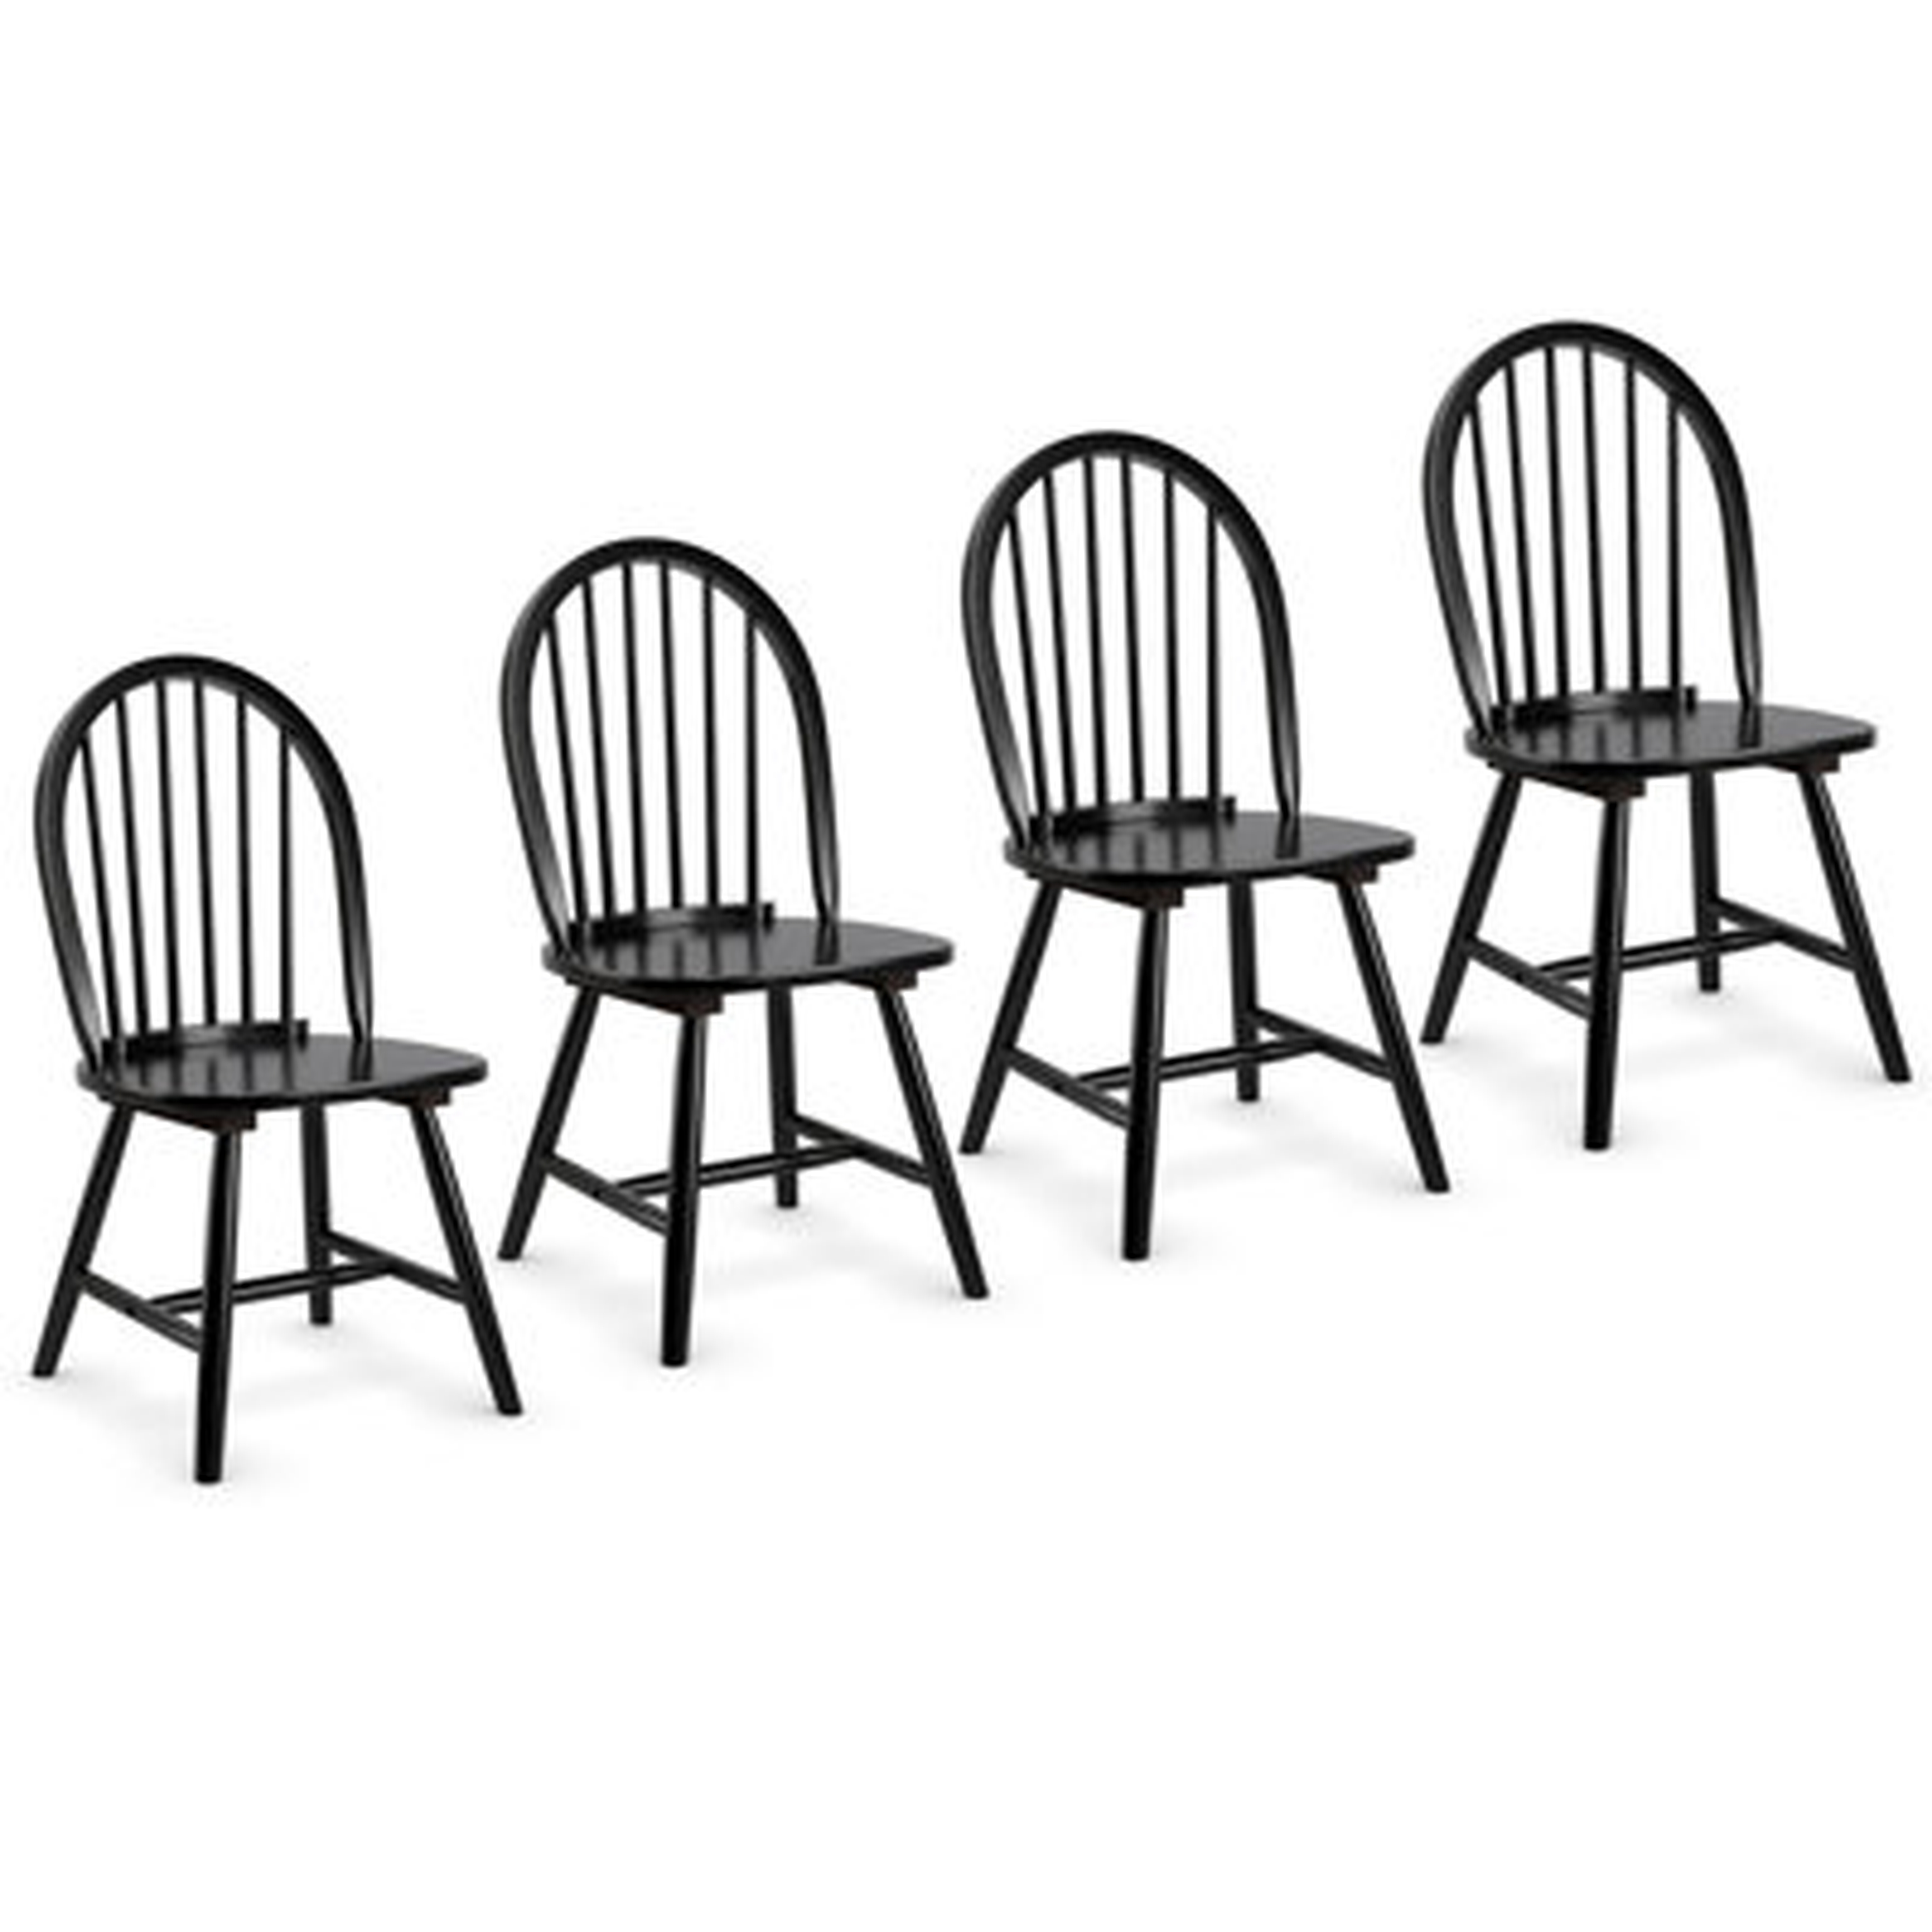 Set Of 4 Vintage Windsor Dining Side Chair Wood Spindleback Kitchen Room Black - Wayfair